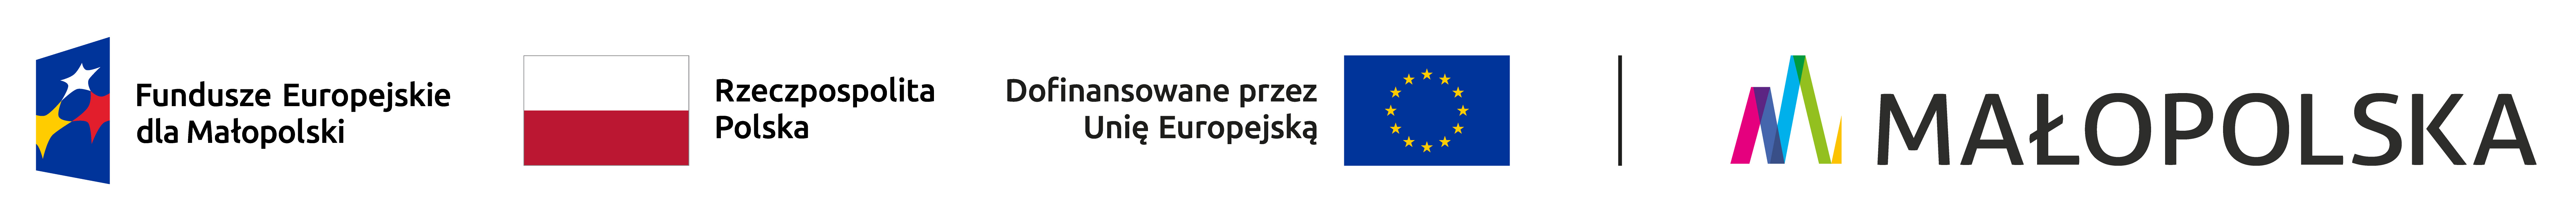 logotypy Fundusze europejskie dla małopolski, Rzeczpospolita polska, Unia Europejska, Małopolska